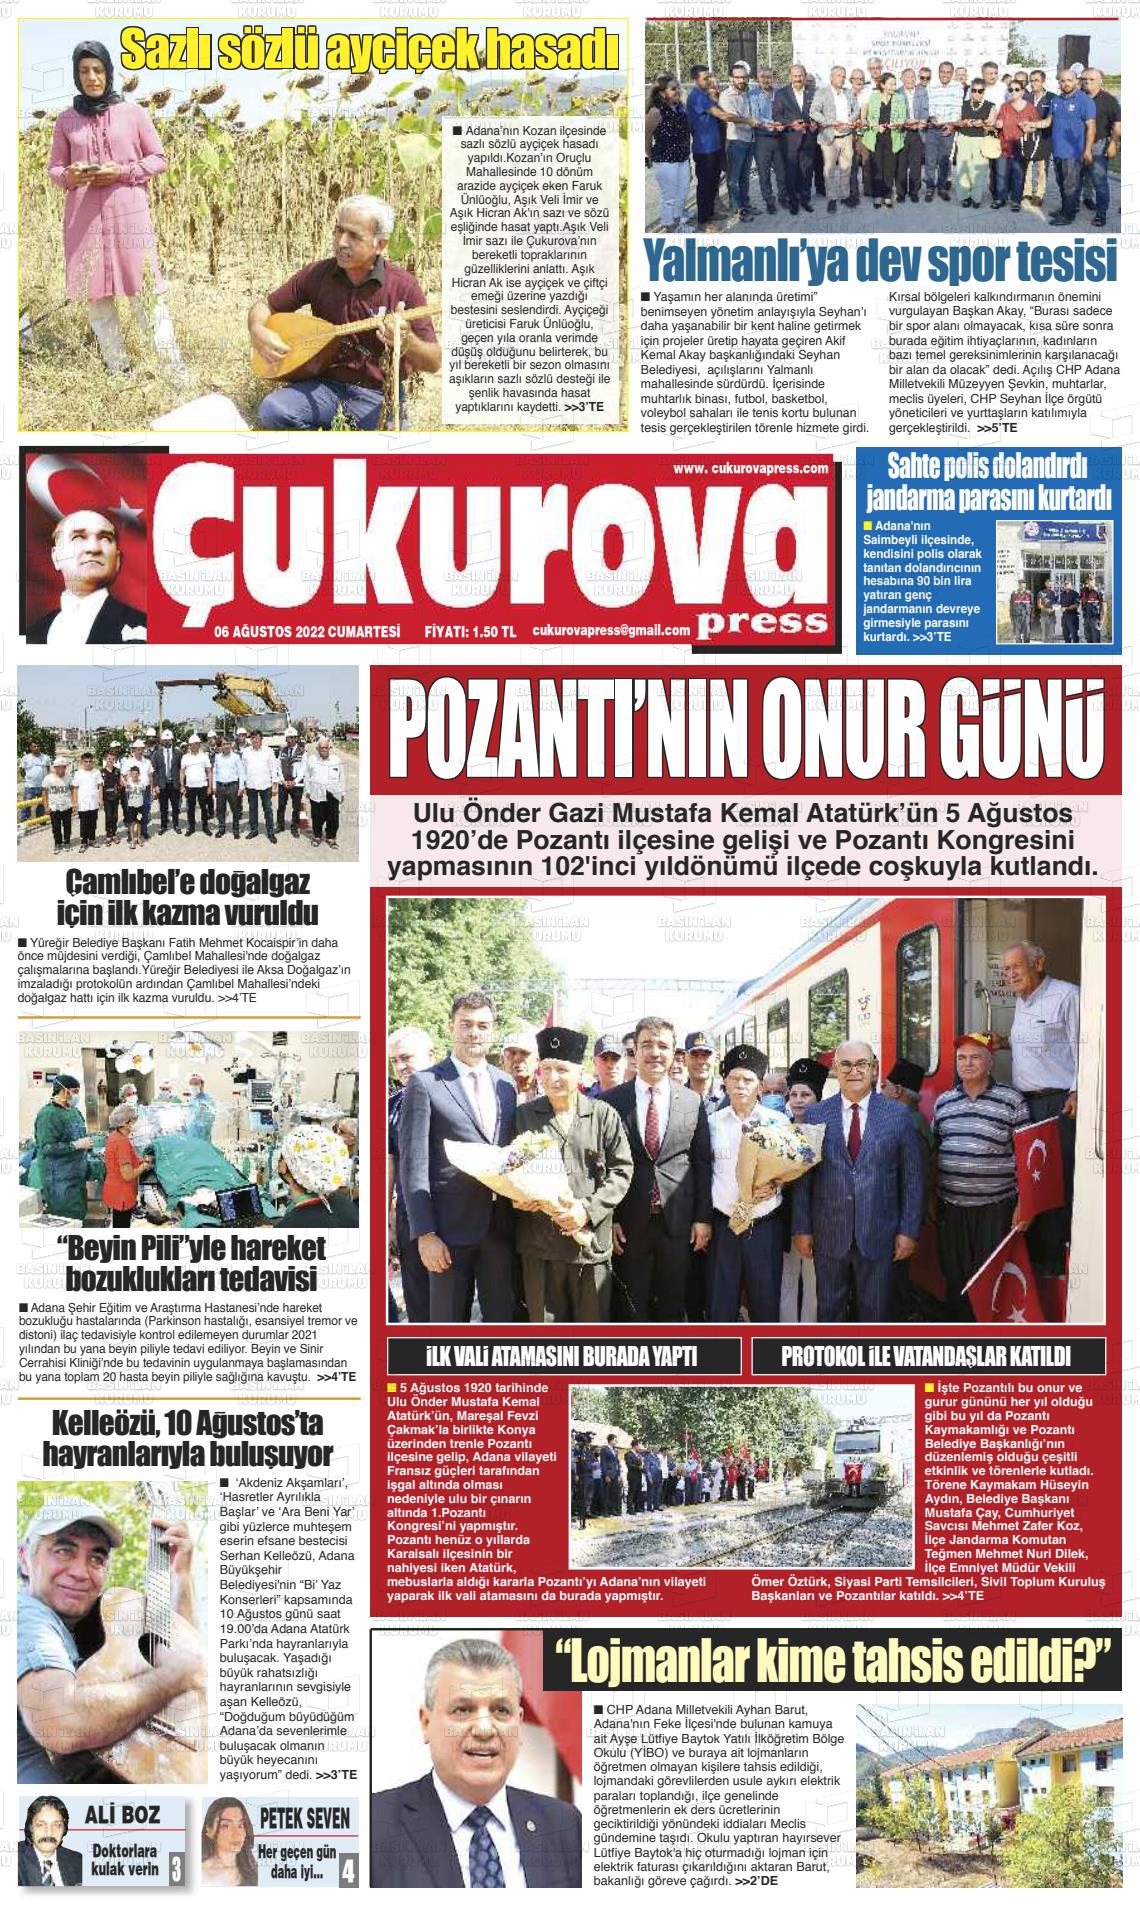 06 Ağustos 2022 Çukurova Press Gazete Manşeti